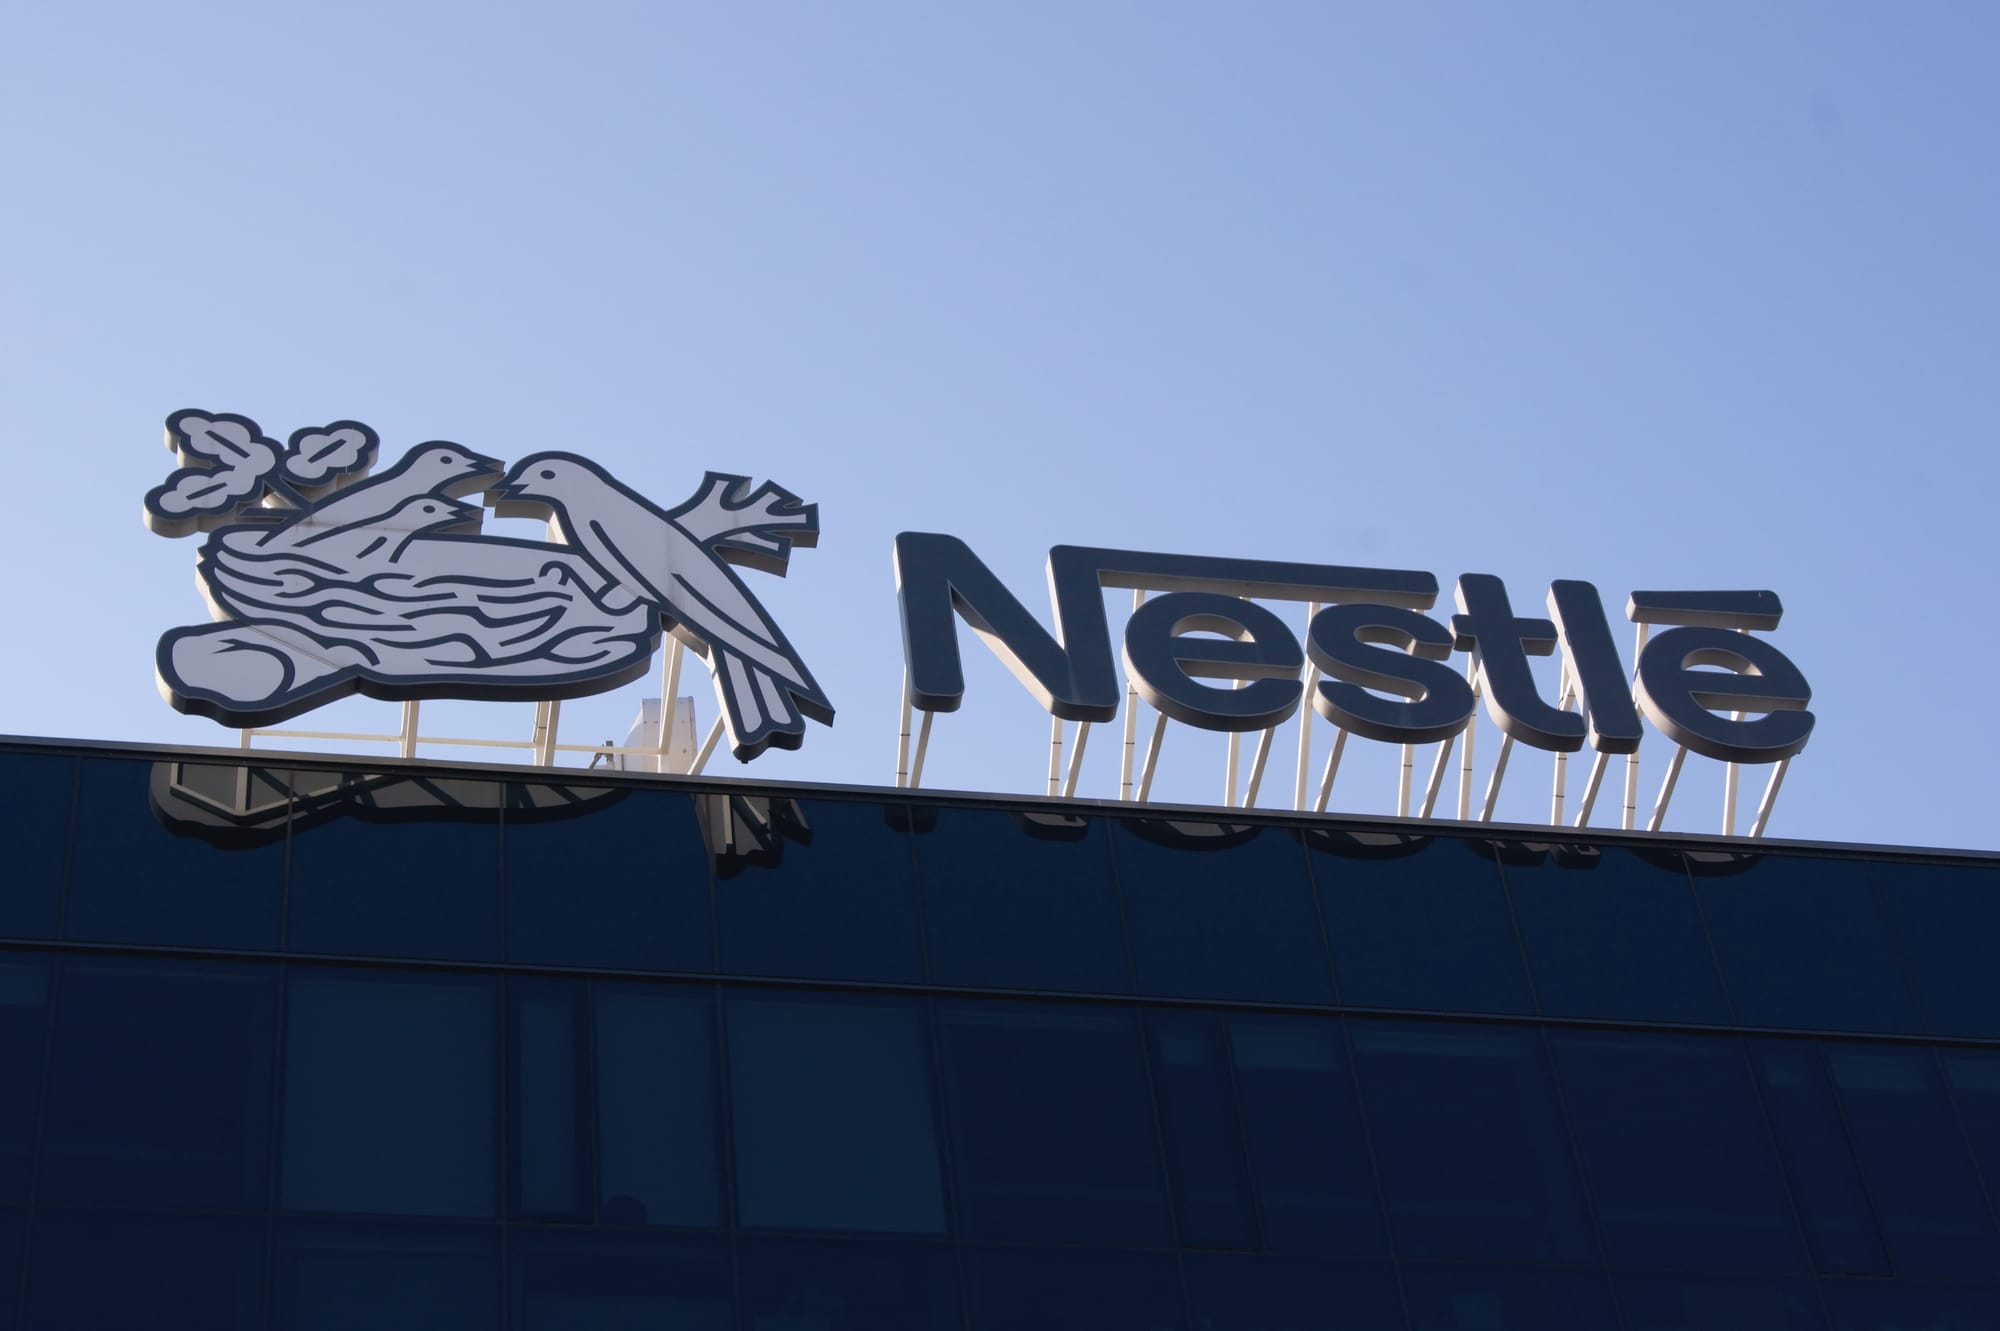 Nestlé nega l’attacco di Anonymous: “Dati trapelati per nostro errore” thumbnail